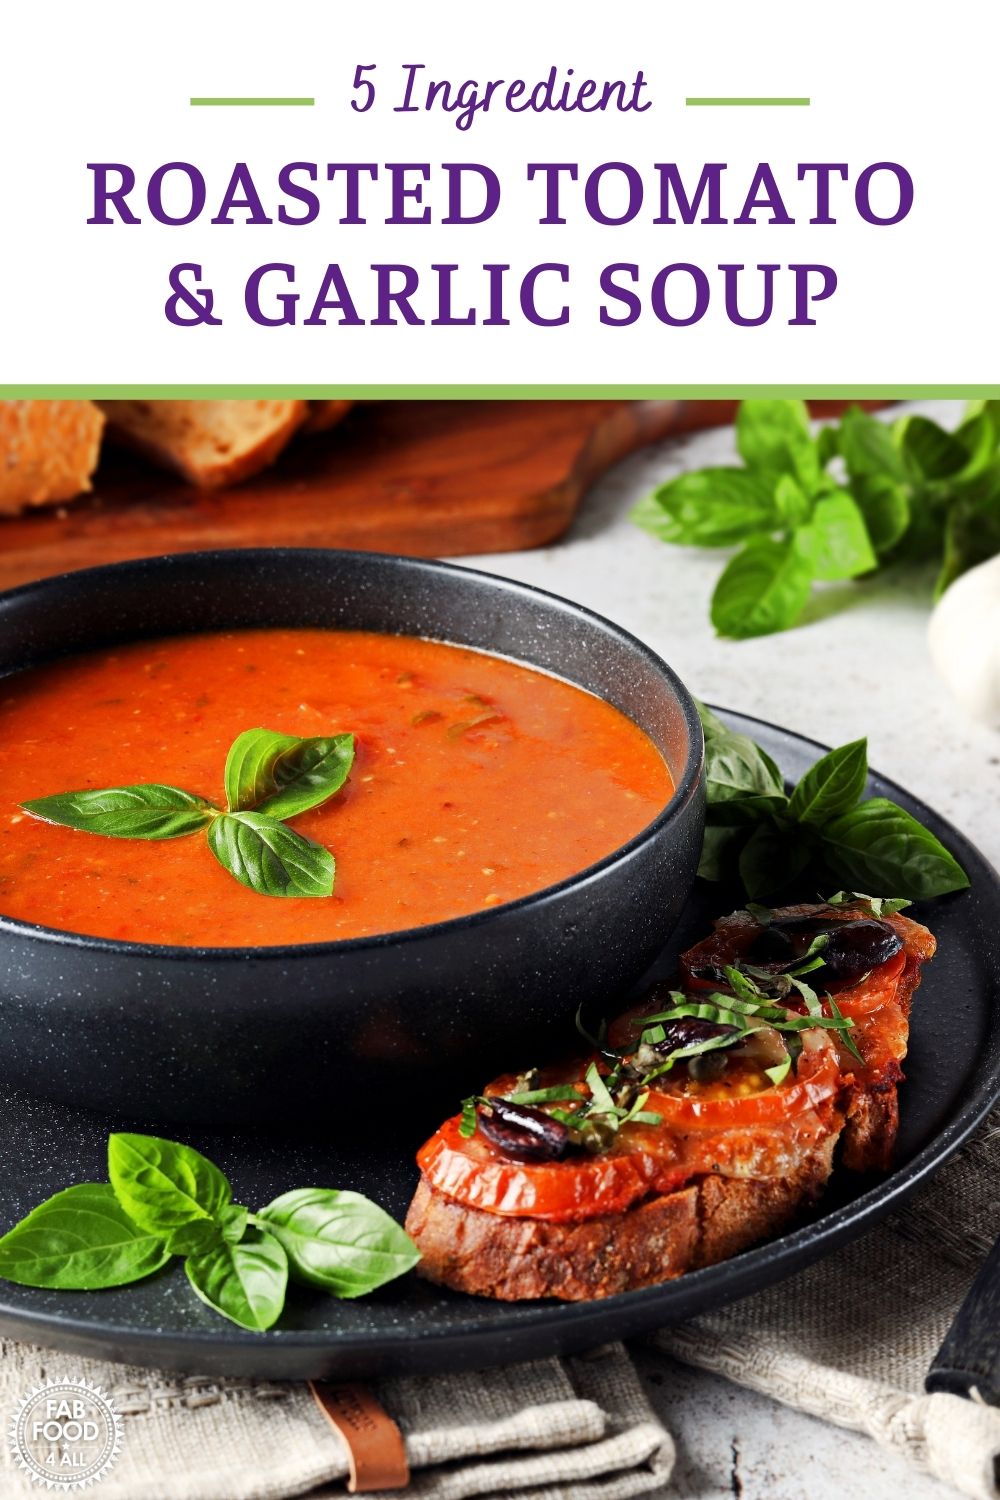 Roasted Tomato & Garlic Soup Pinterest image.